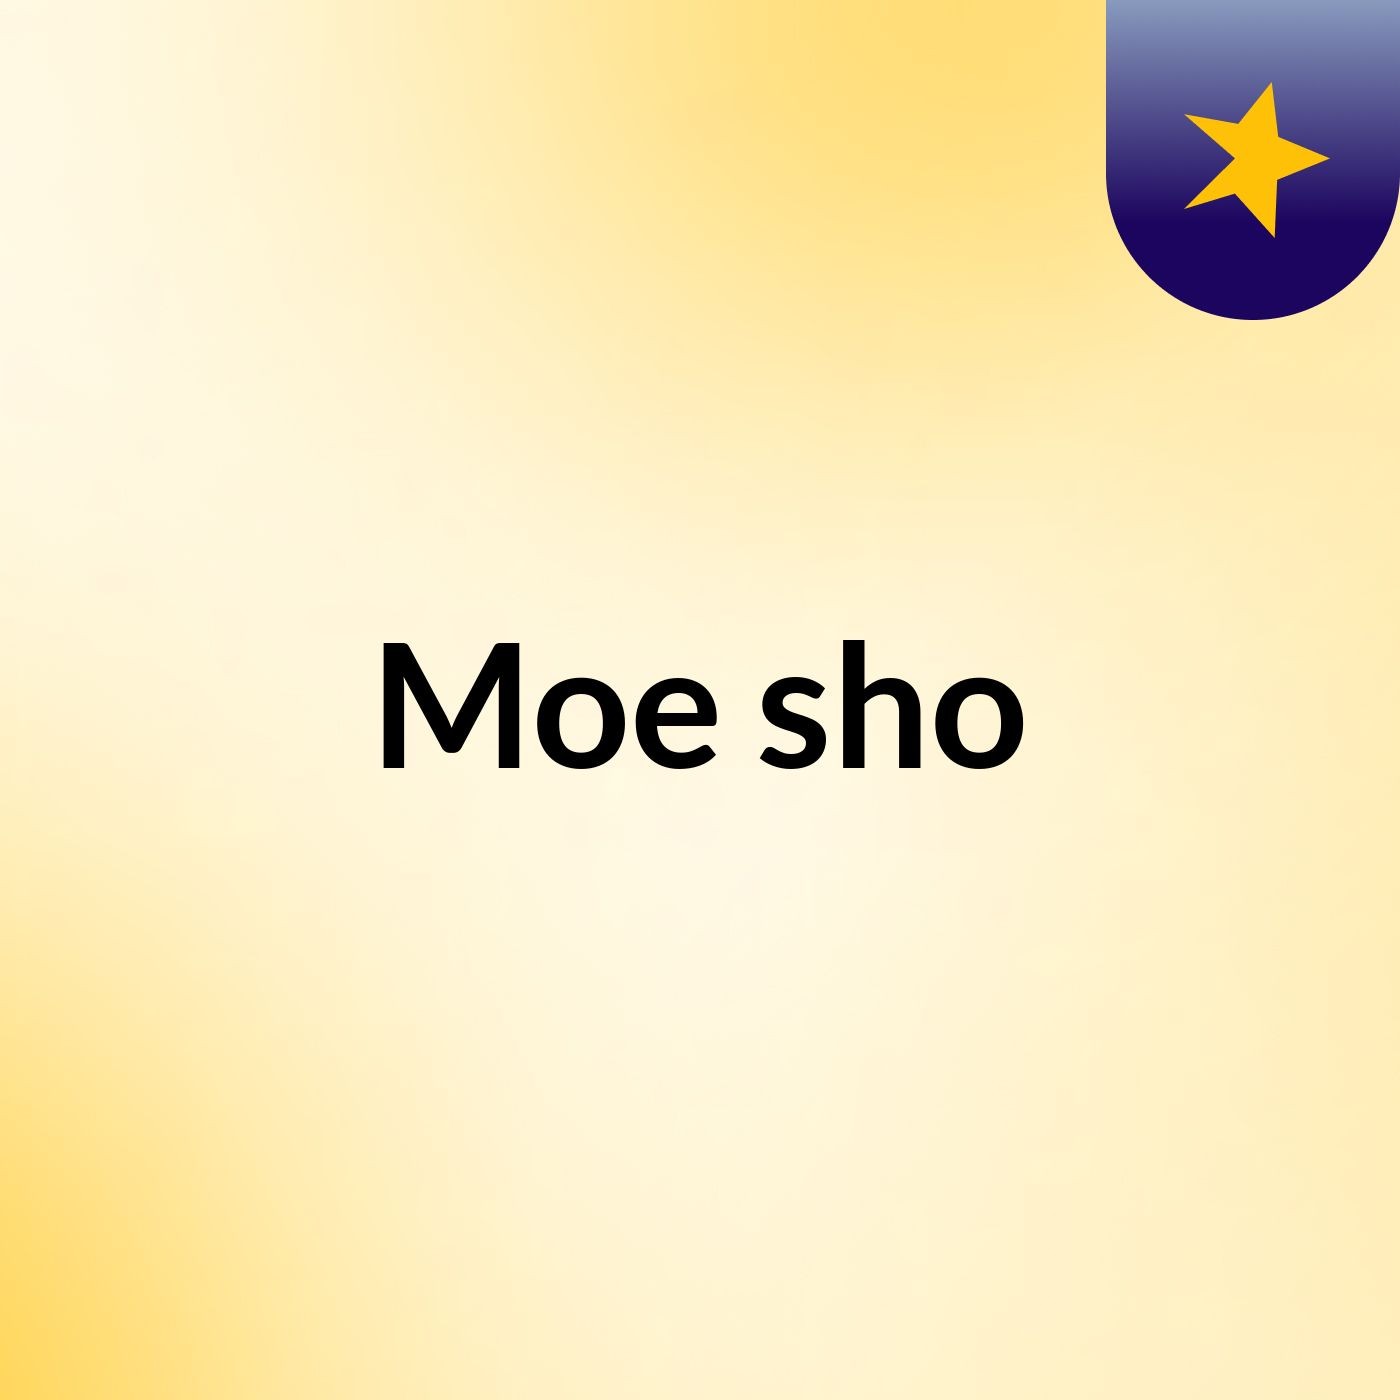 Moe sho